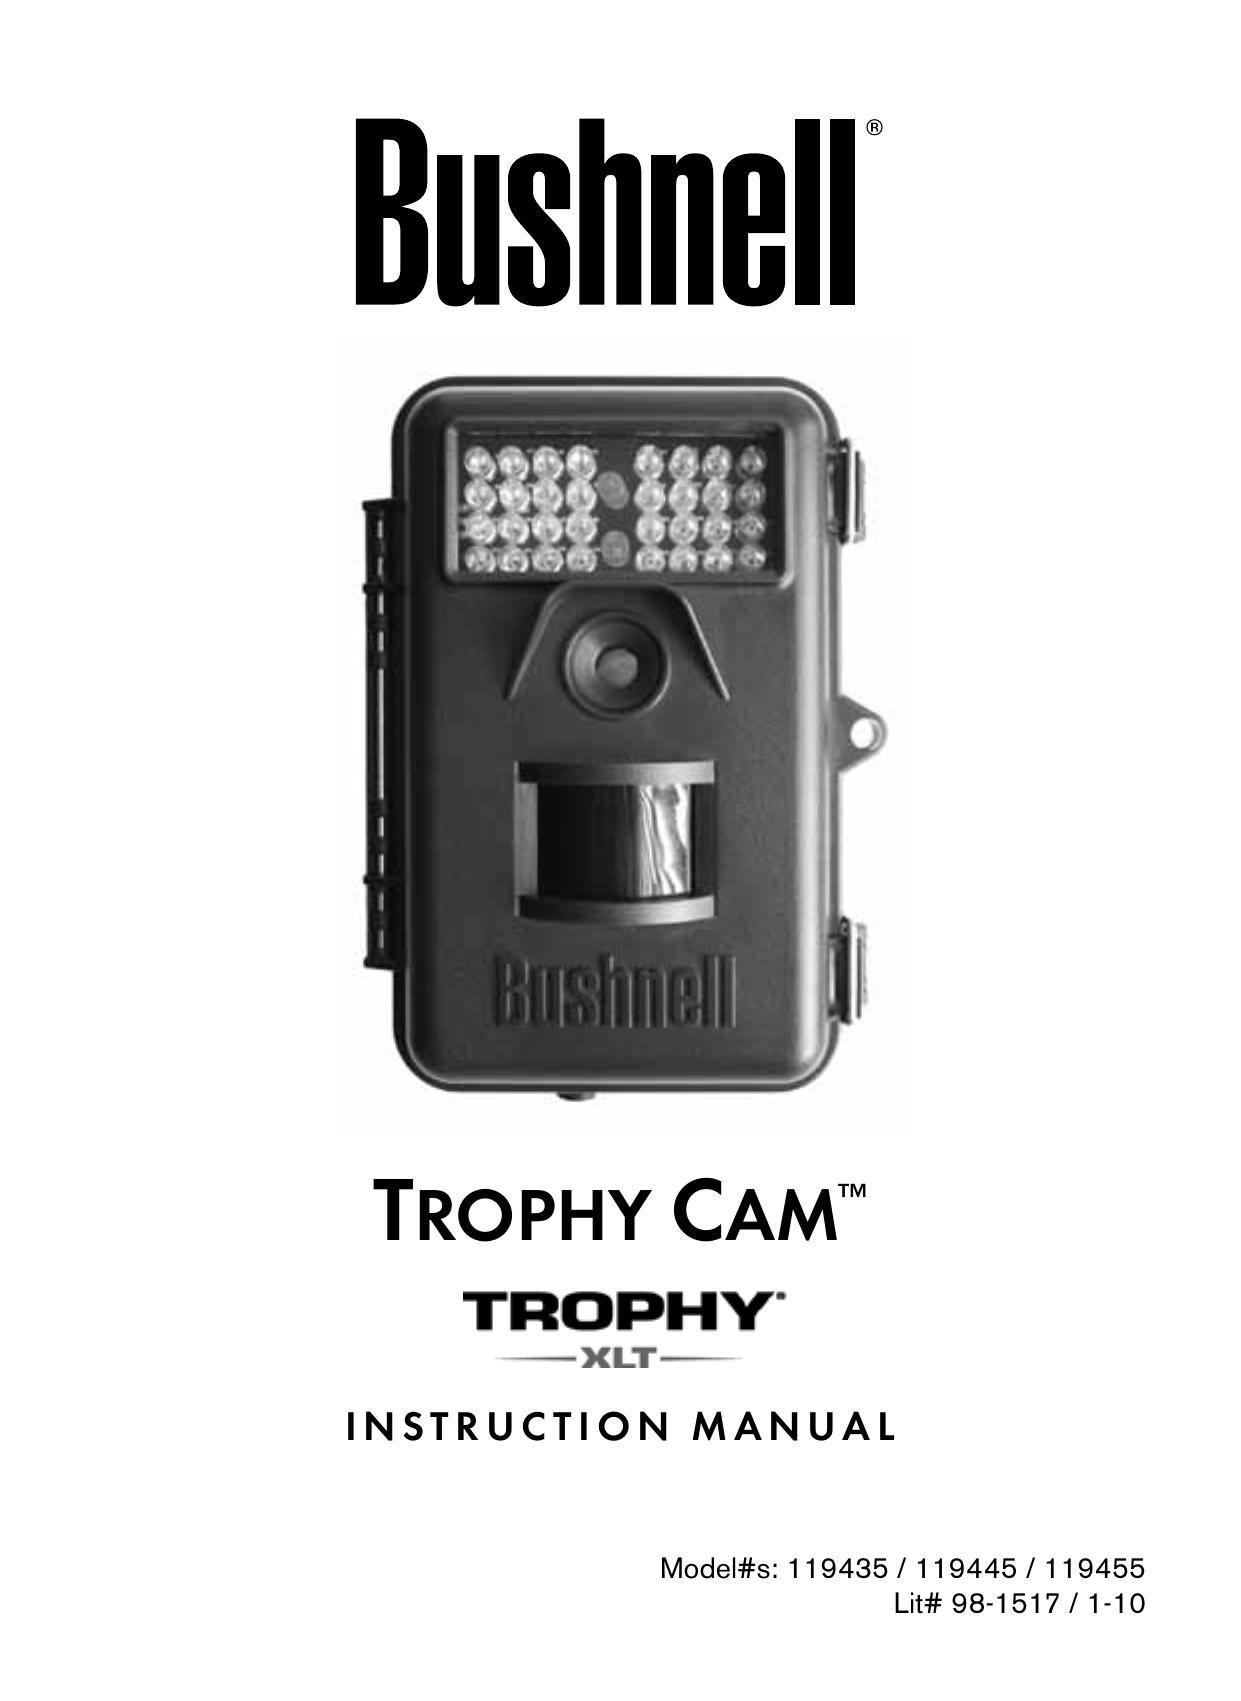 Bushnell 119455 Digital Camera User Manual